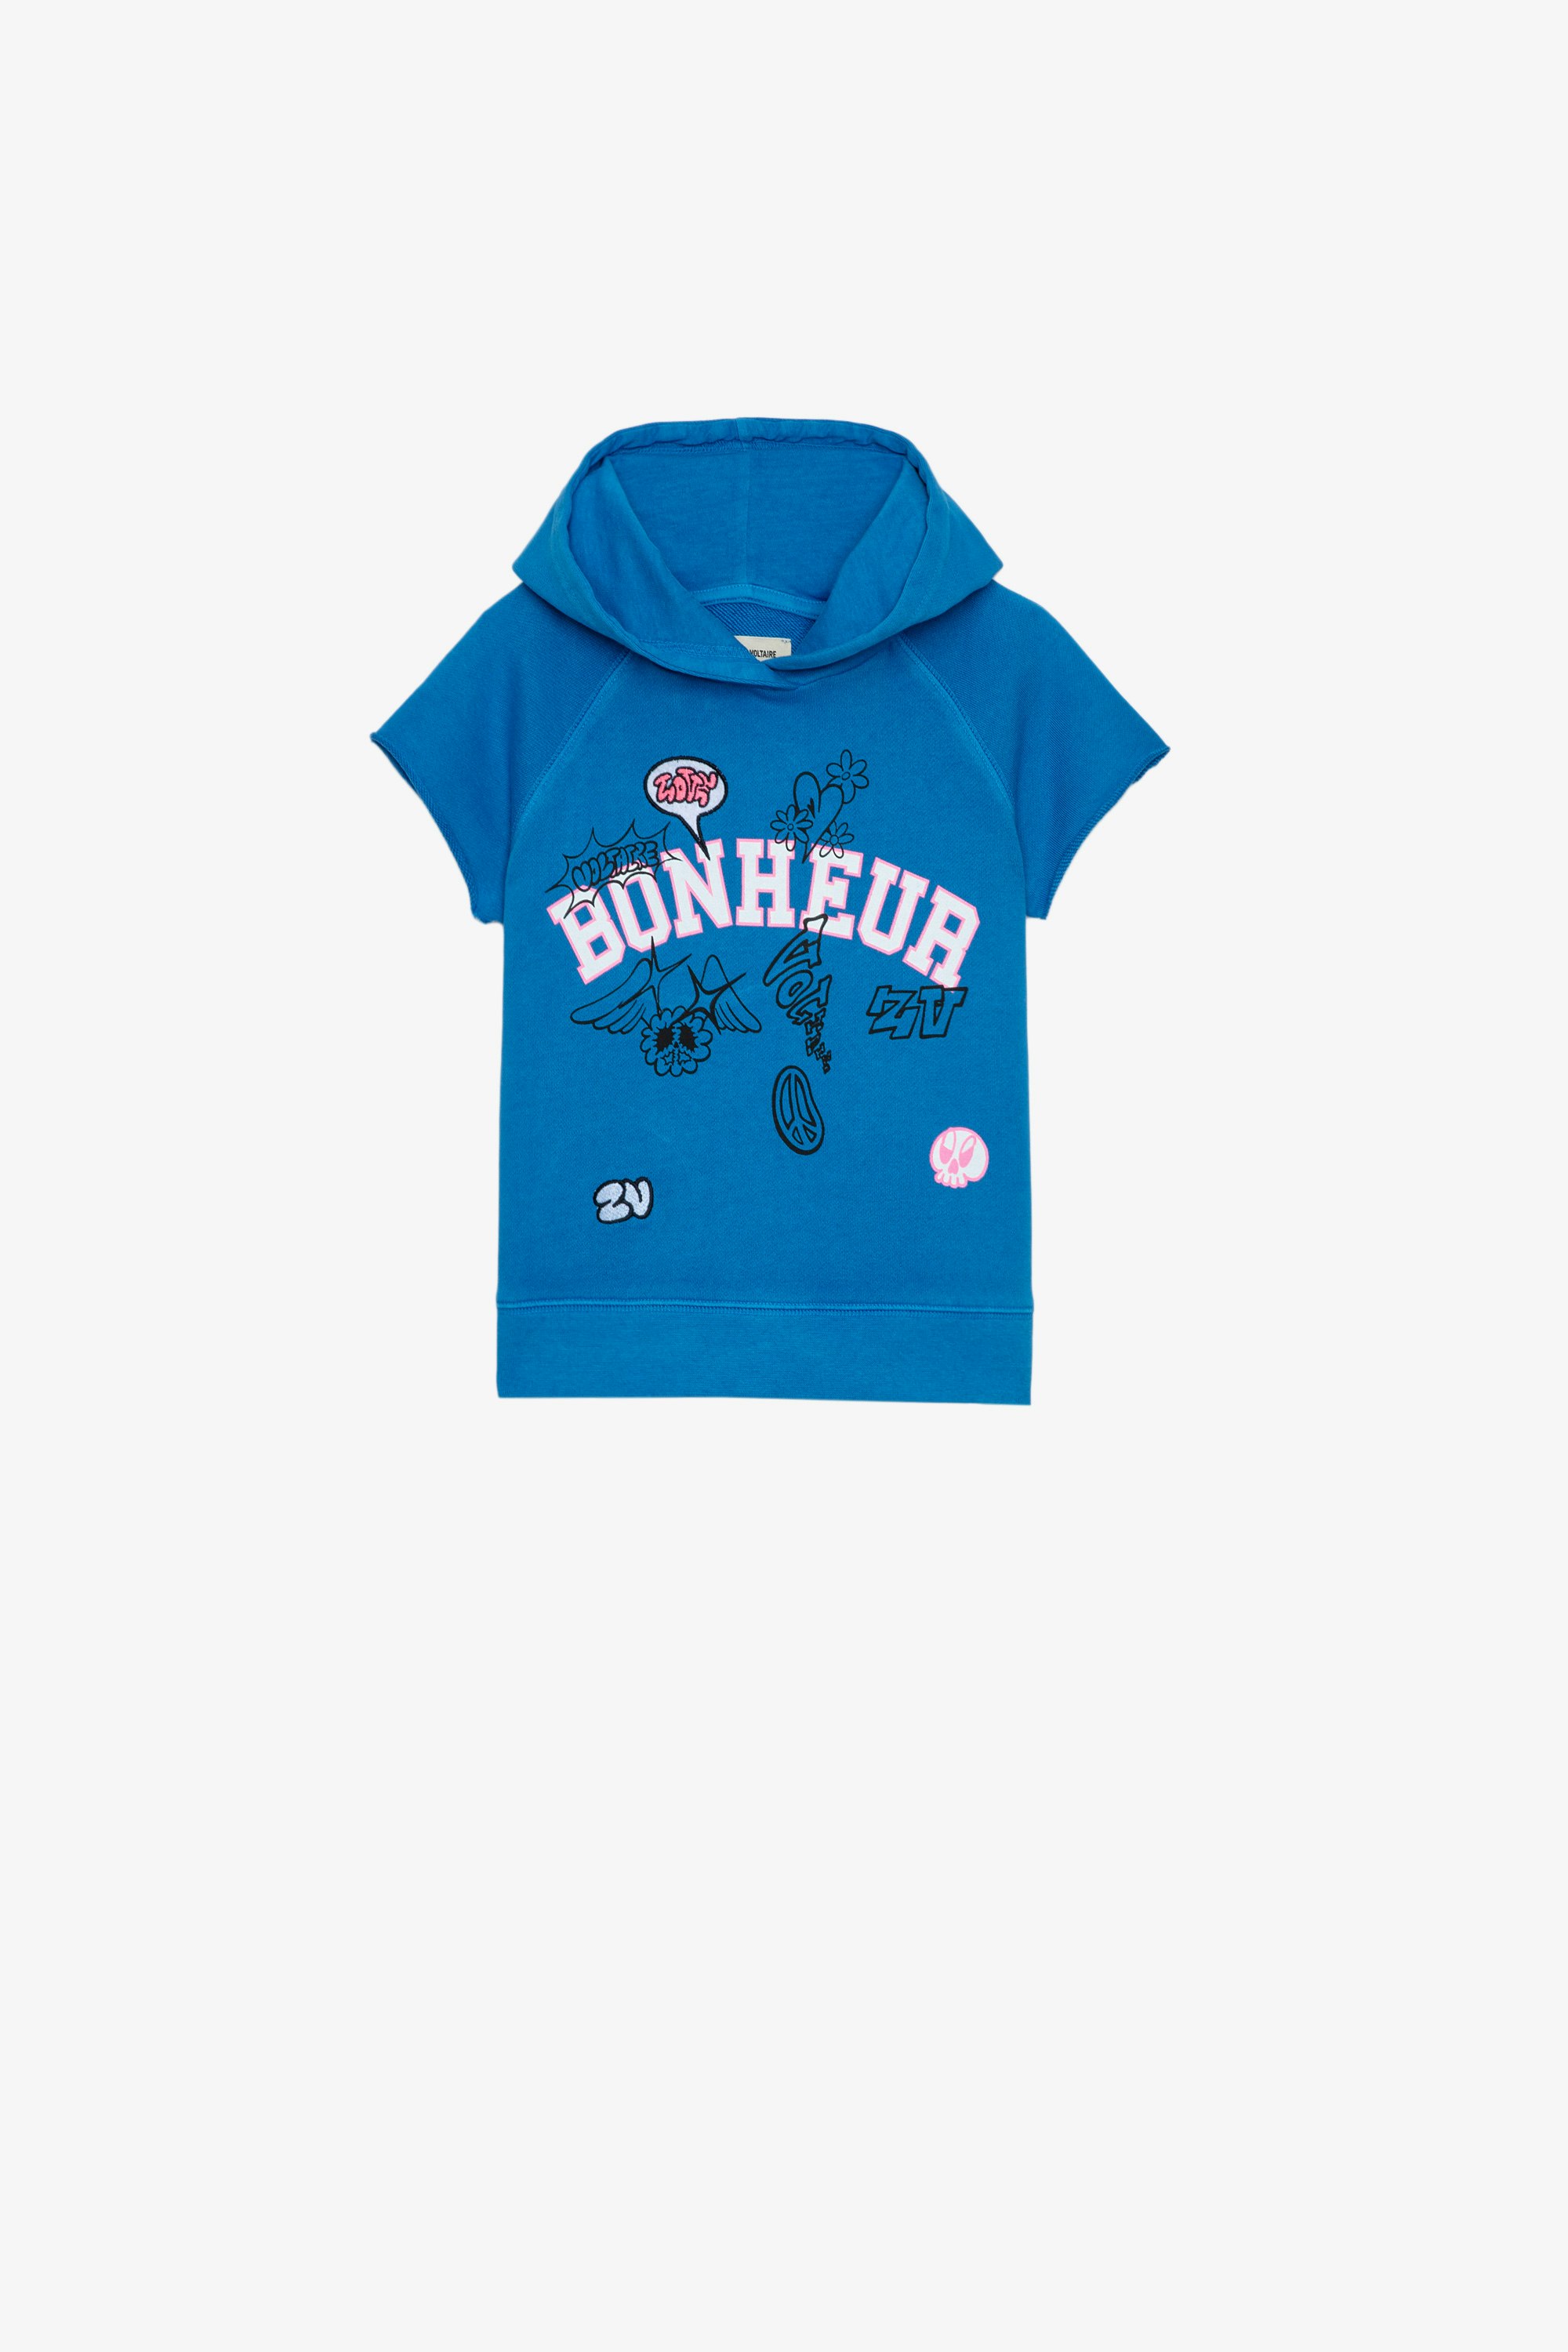 Sweatshirt Gorgia Enfant Sweatshirt à capuche en coton bleu sans manches orné d'une inscription "Bonheur" et de broderies enfant